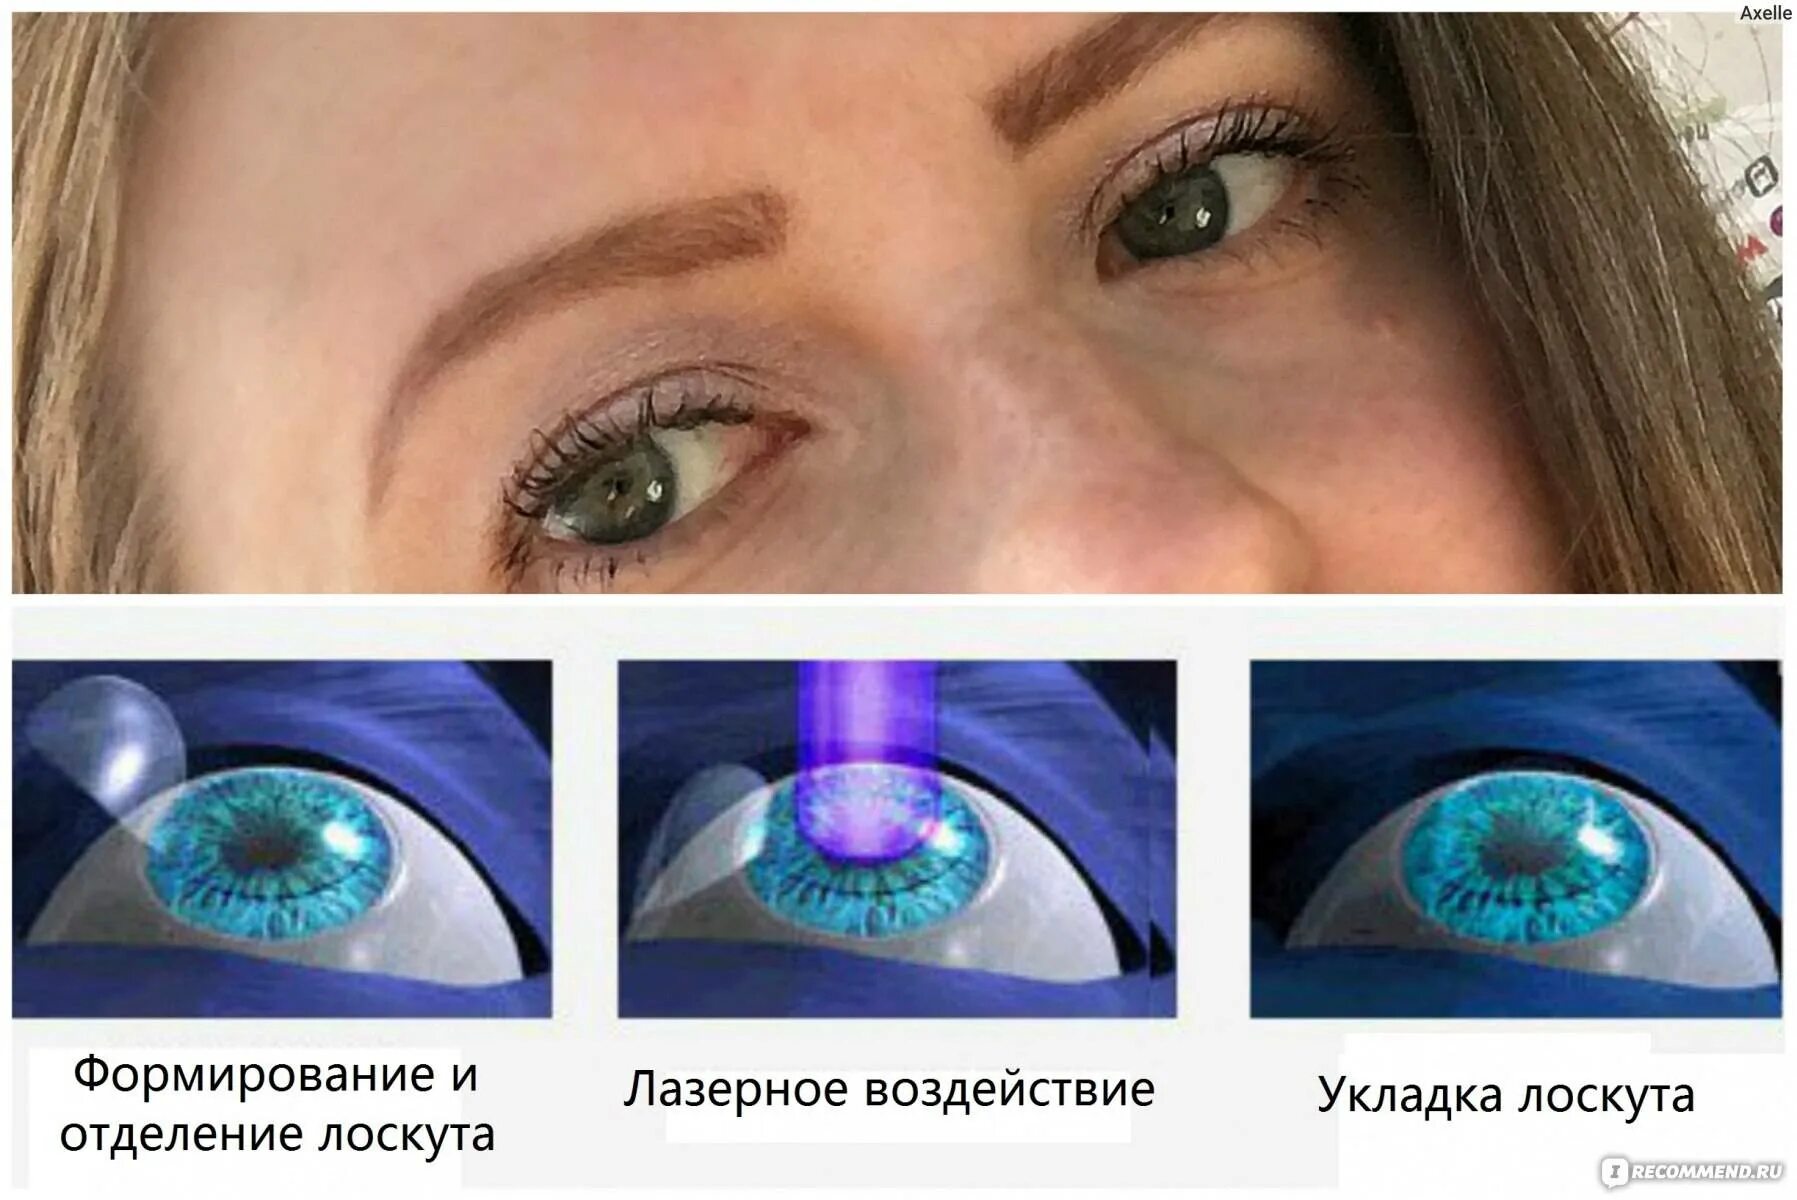 Лазерная коррекция зрения спустя много лет отзывы. Ласик (LASIK)/Фемто ласик (Femto LASIK). Лазерная коррекция зрения Femto LASIK. Глаза после лазерной коррекции.